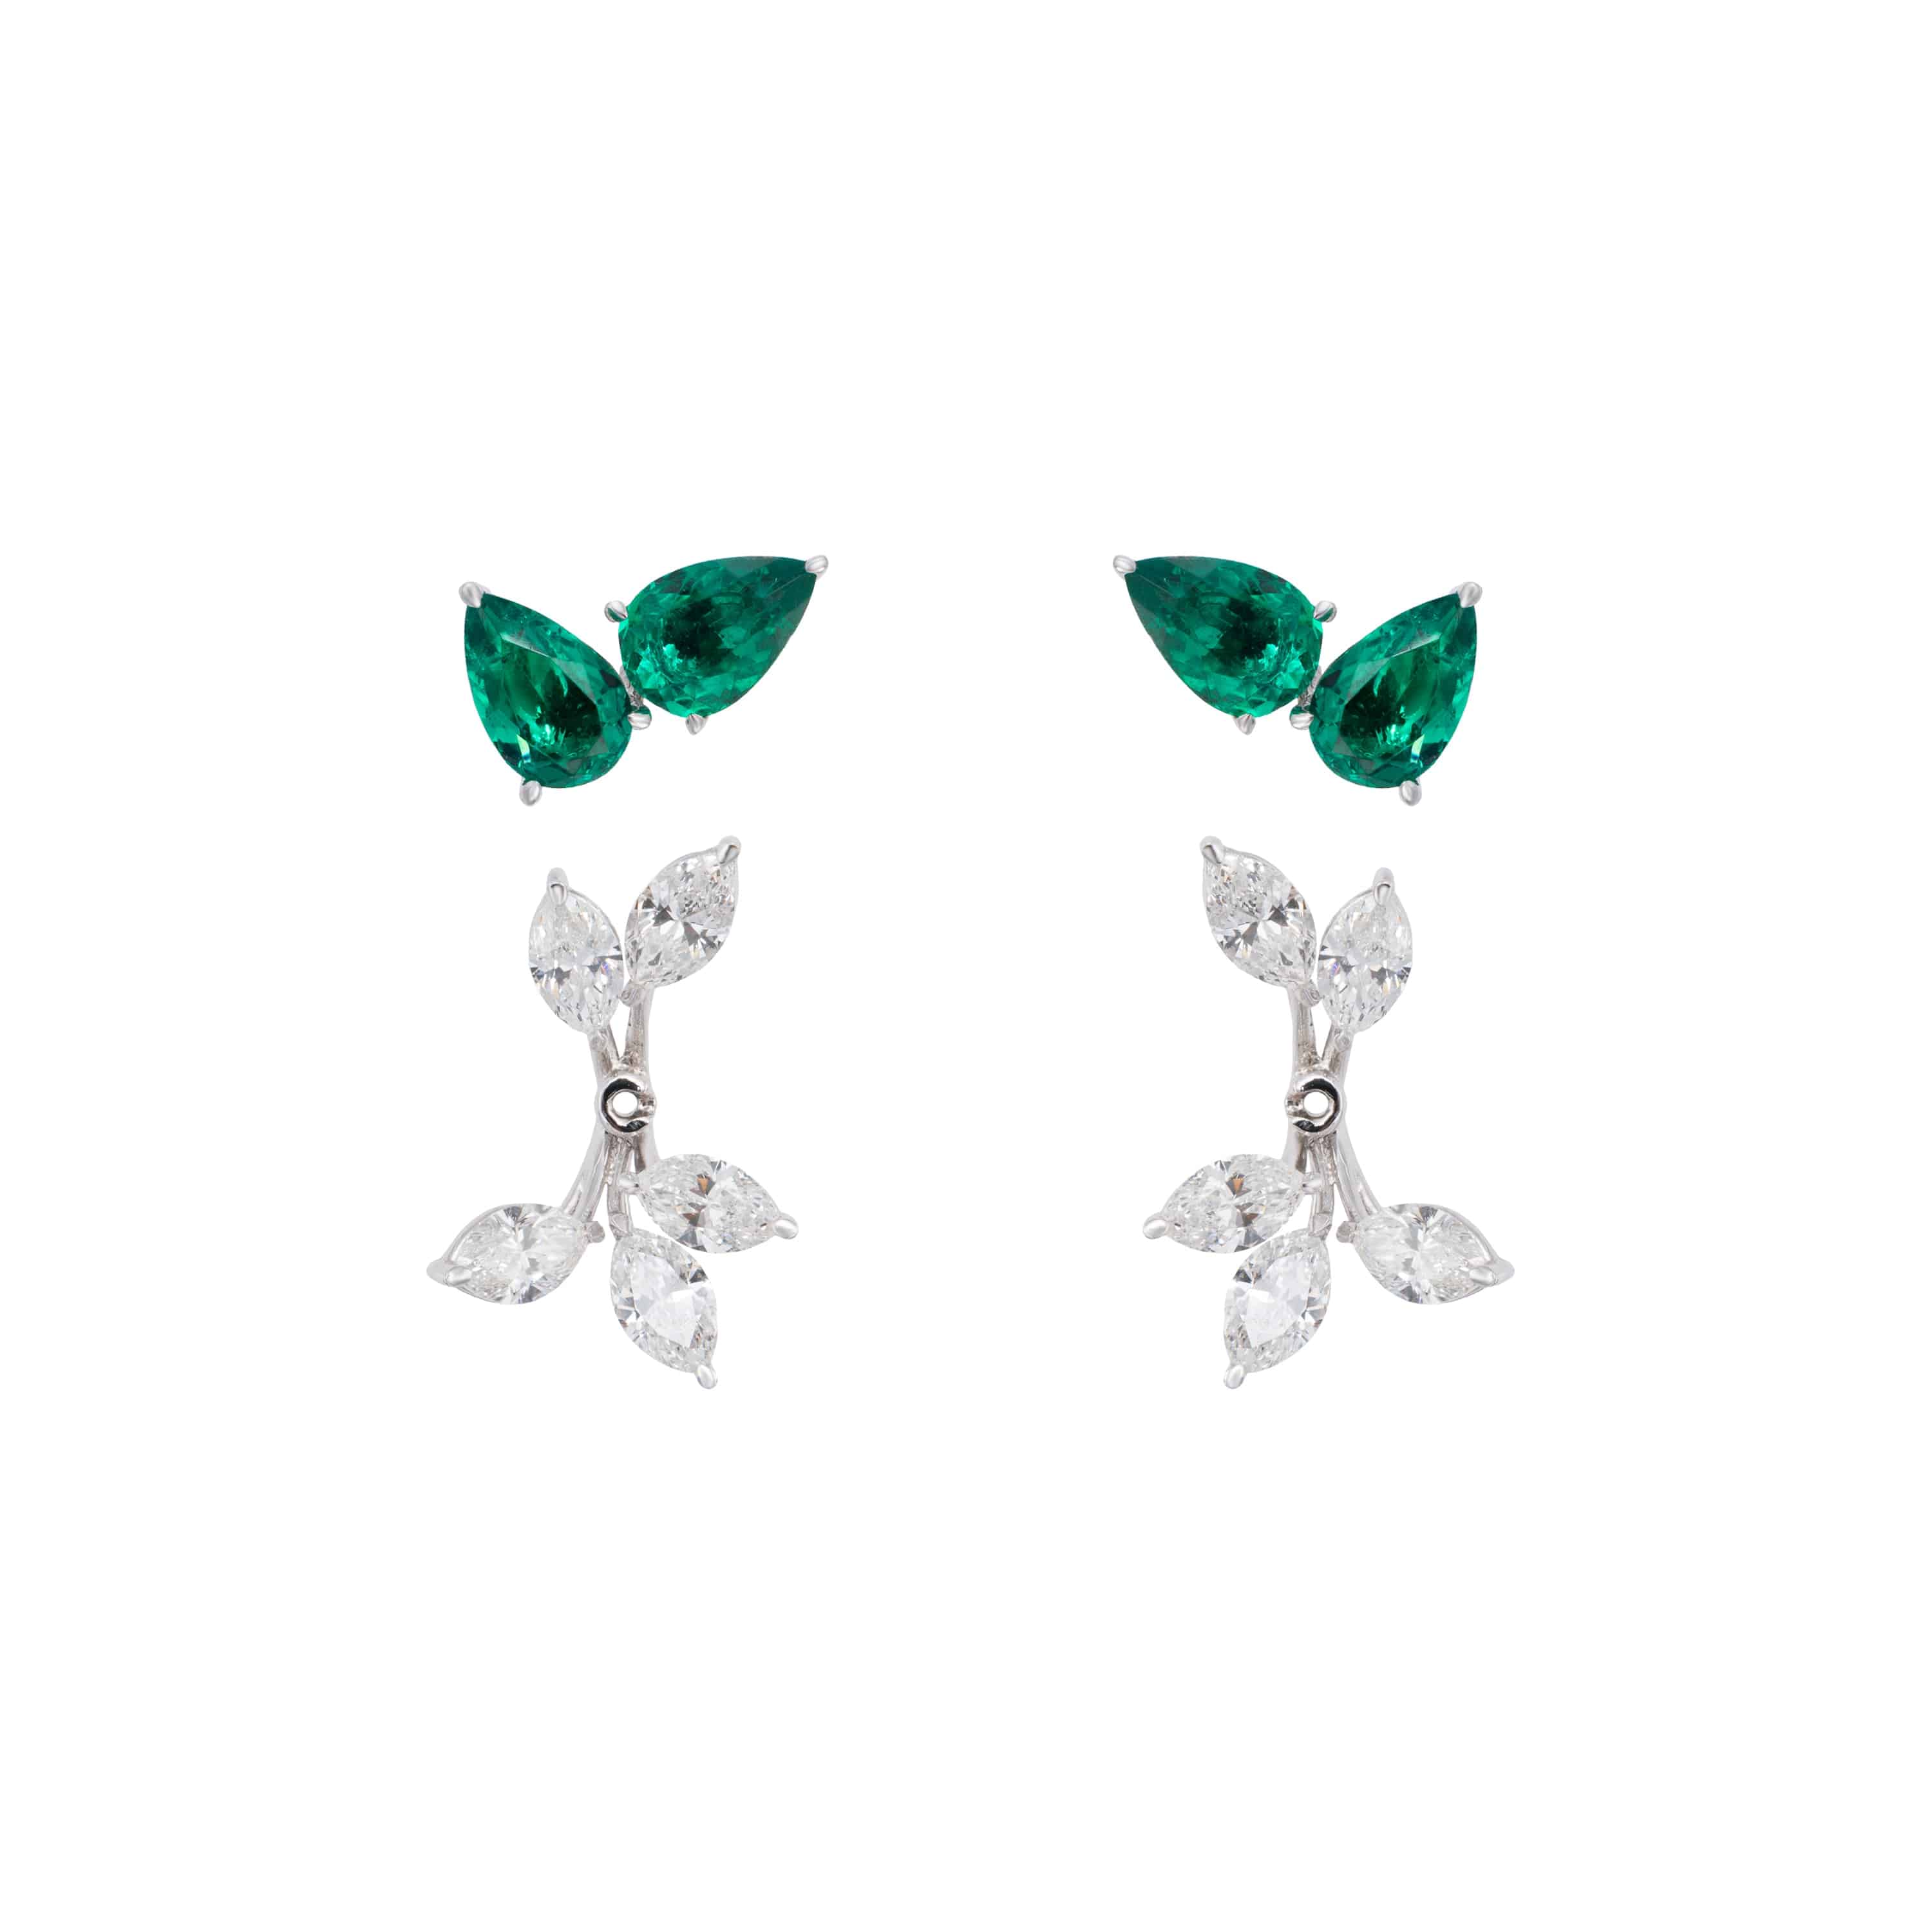 transformational-emerald-earrings-diamond-jackets-neo0023-43110666567844.jpg